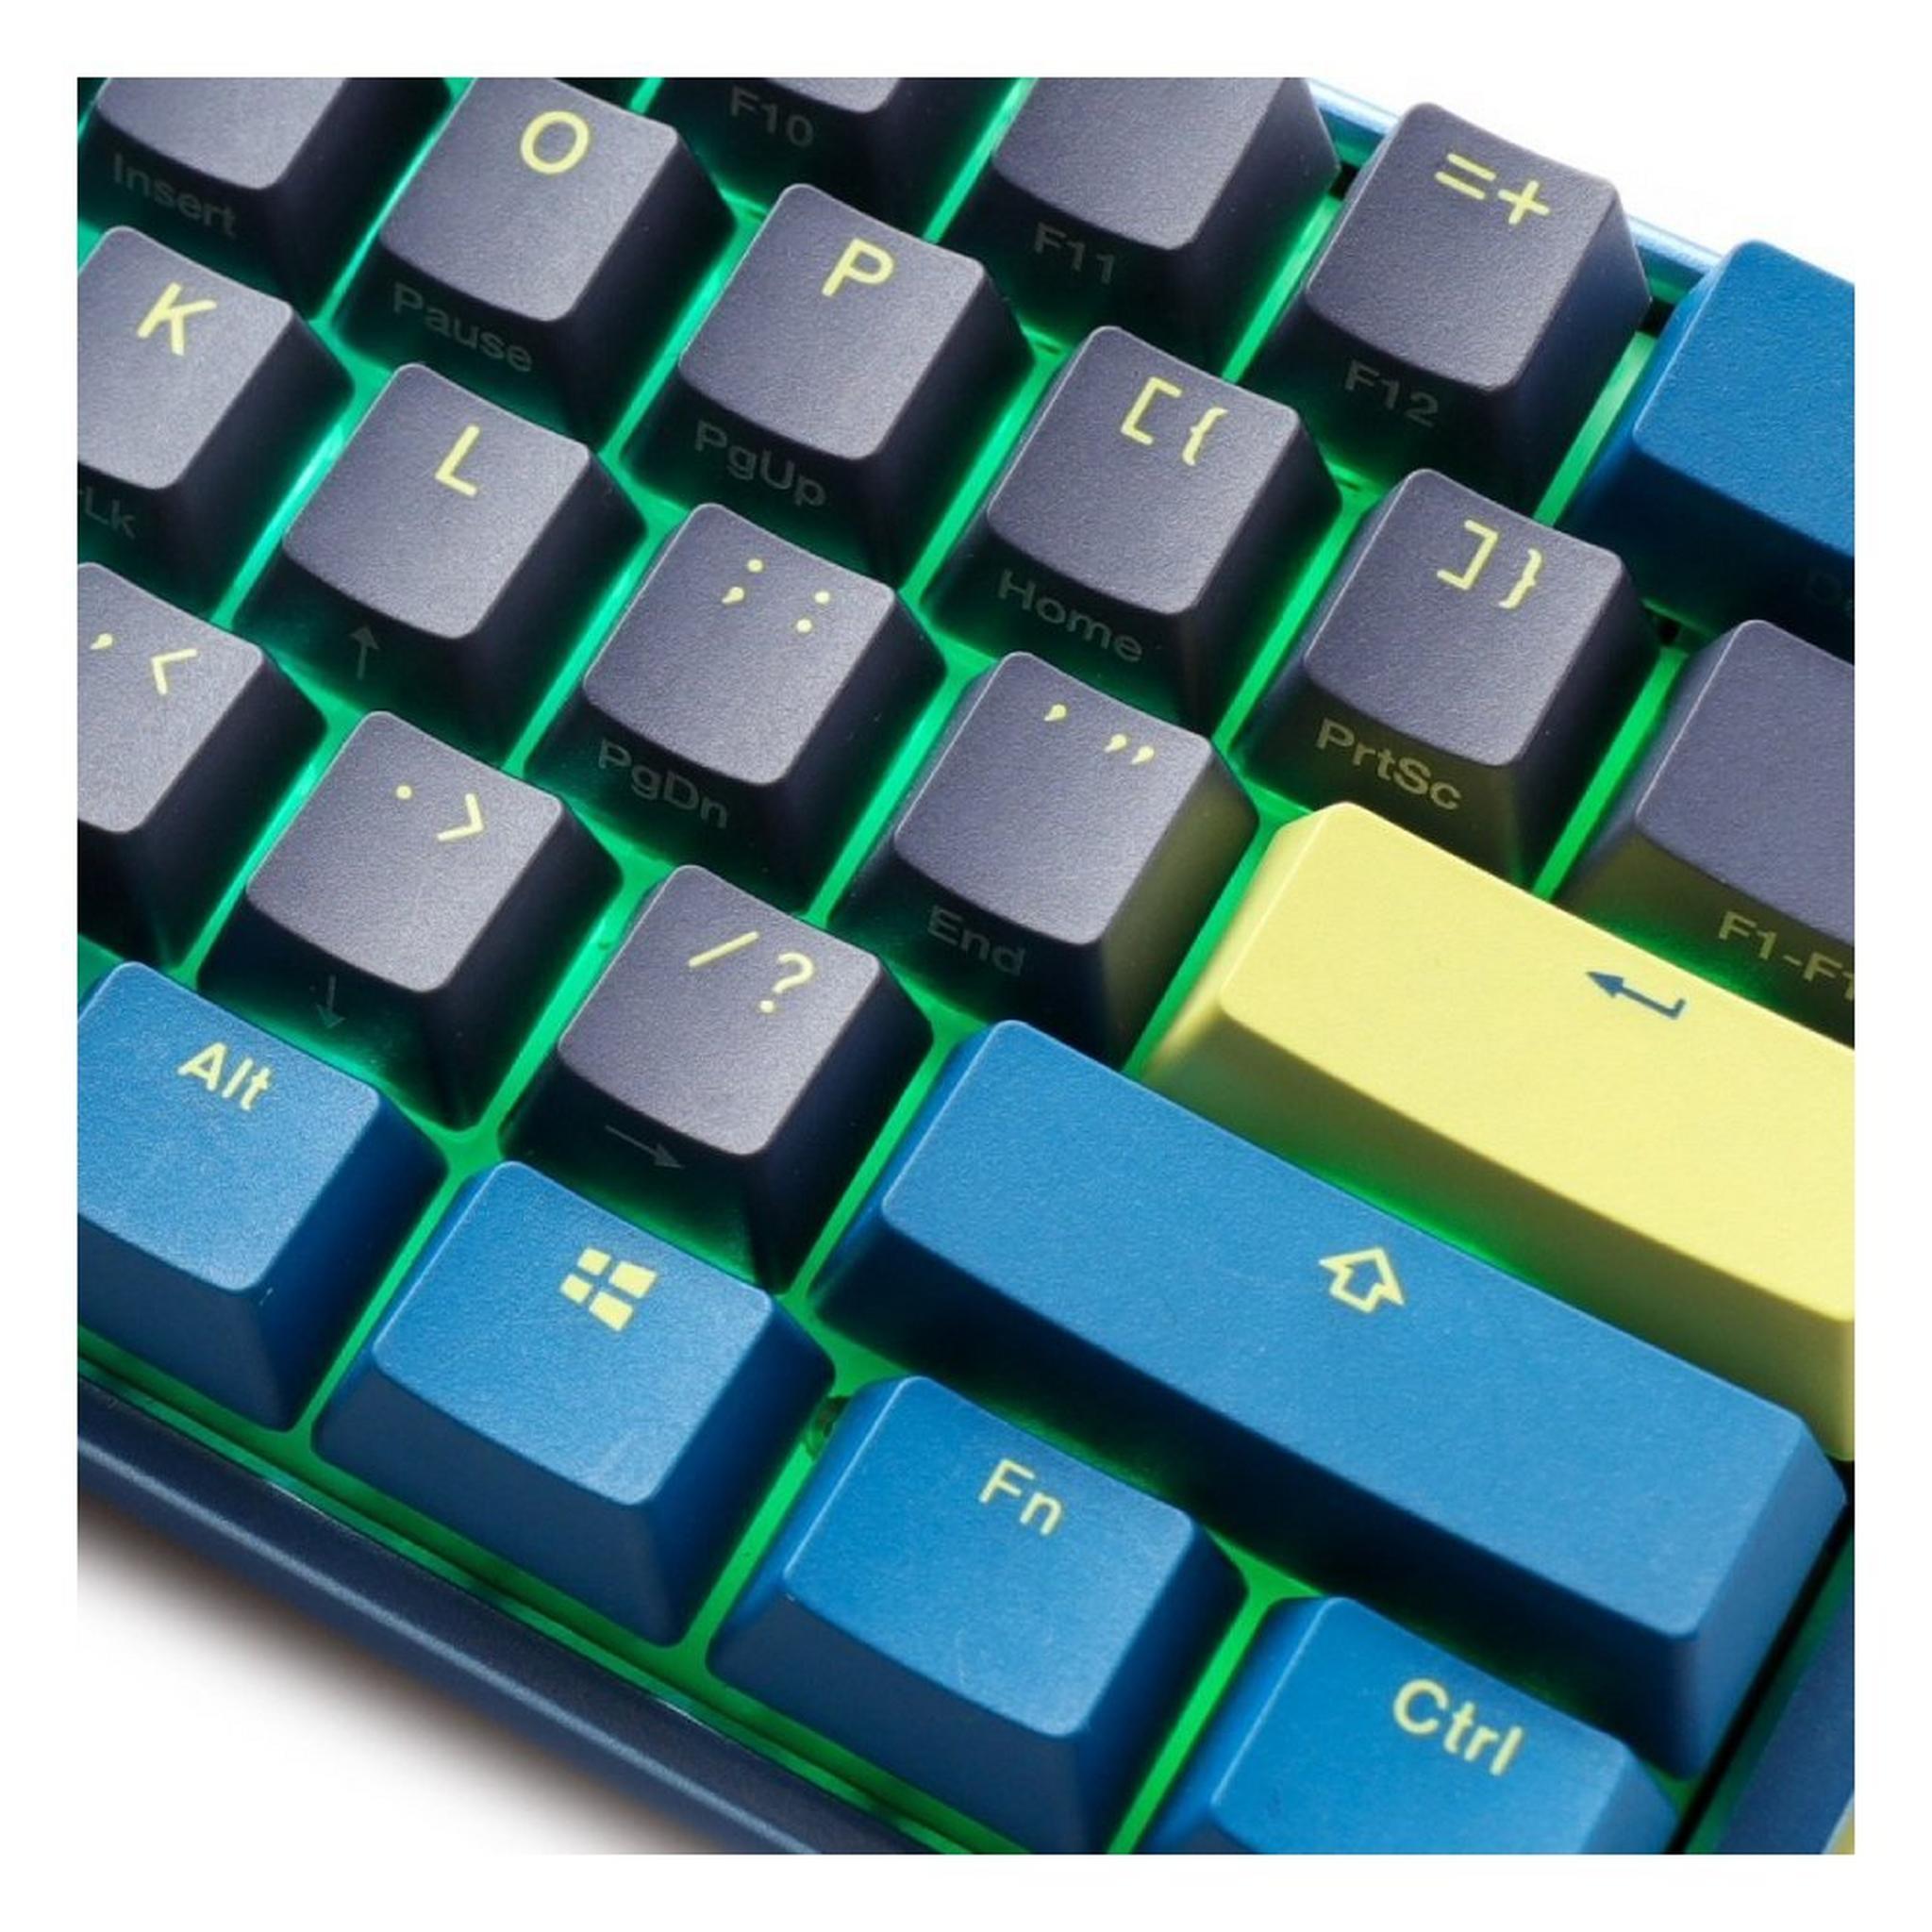 لوحة المفاتيح الميكانيكية دوكي ون 3 ميني داي بريك - أزرق كرزي